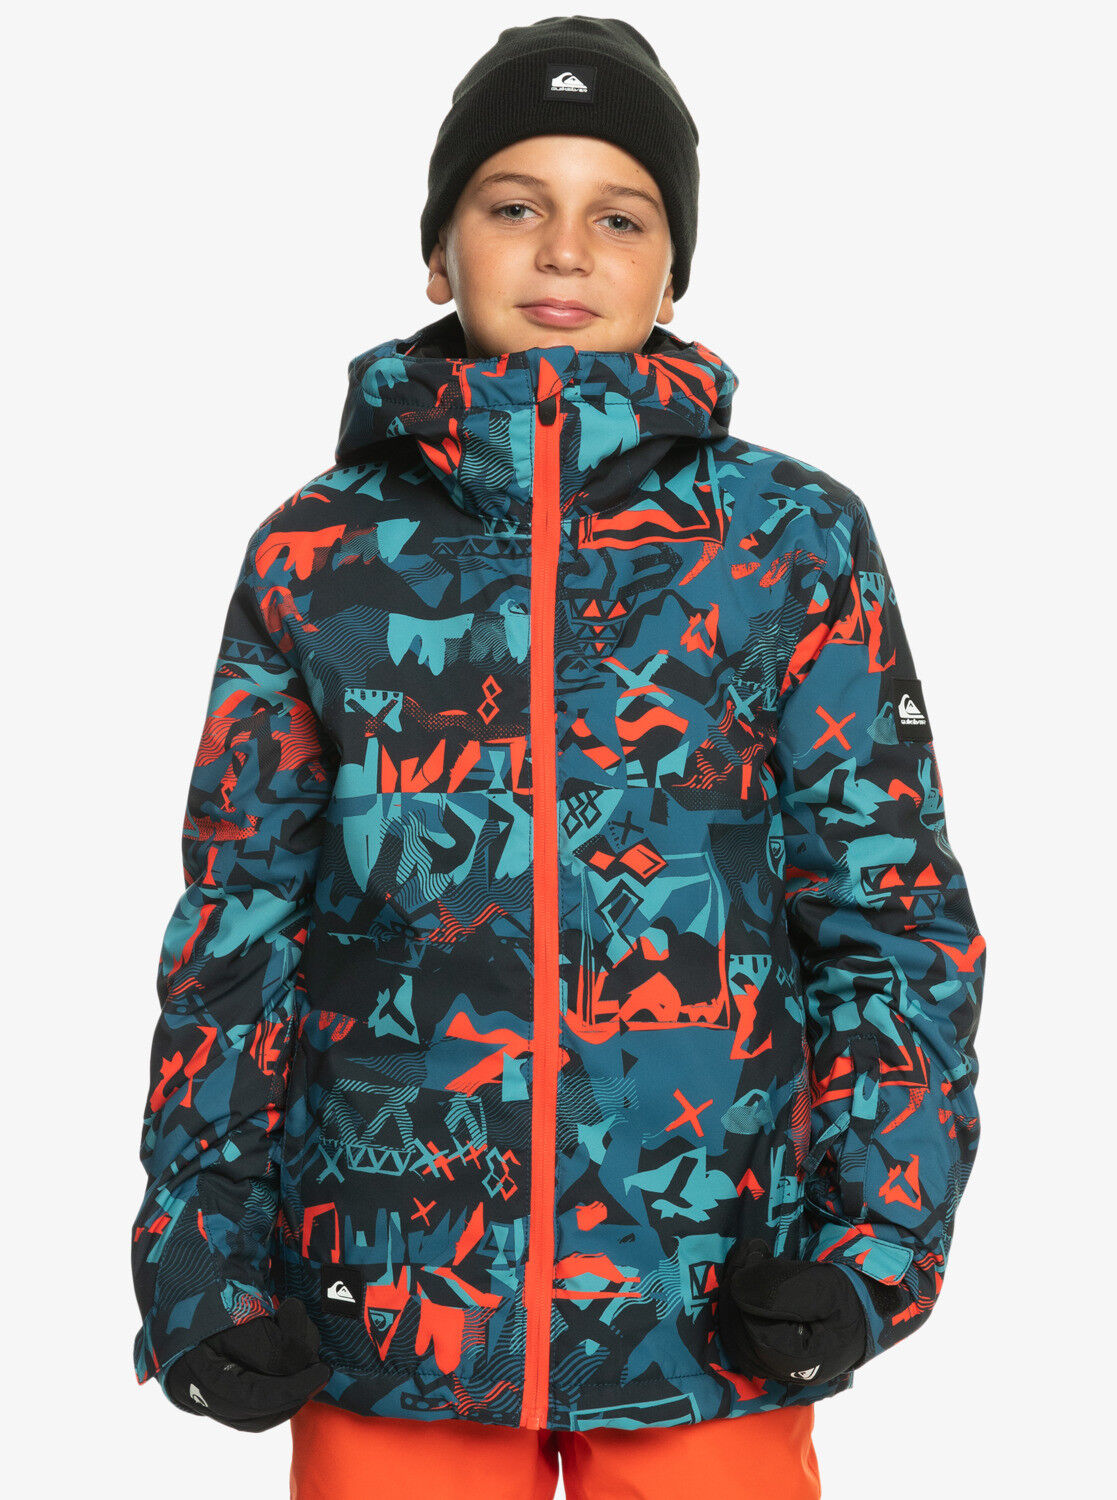 Quiksilver Mission Printed Youth Jacket - Veste ski enfant | Hardloop